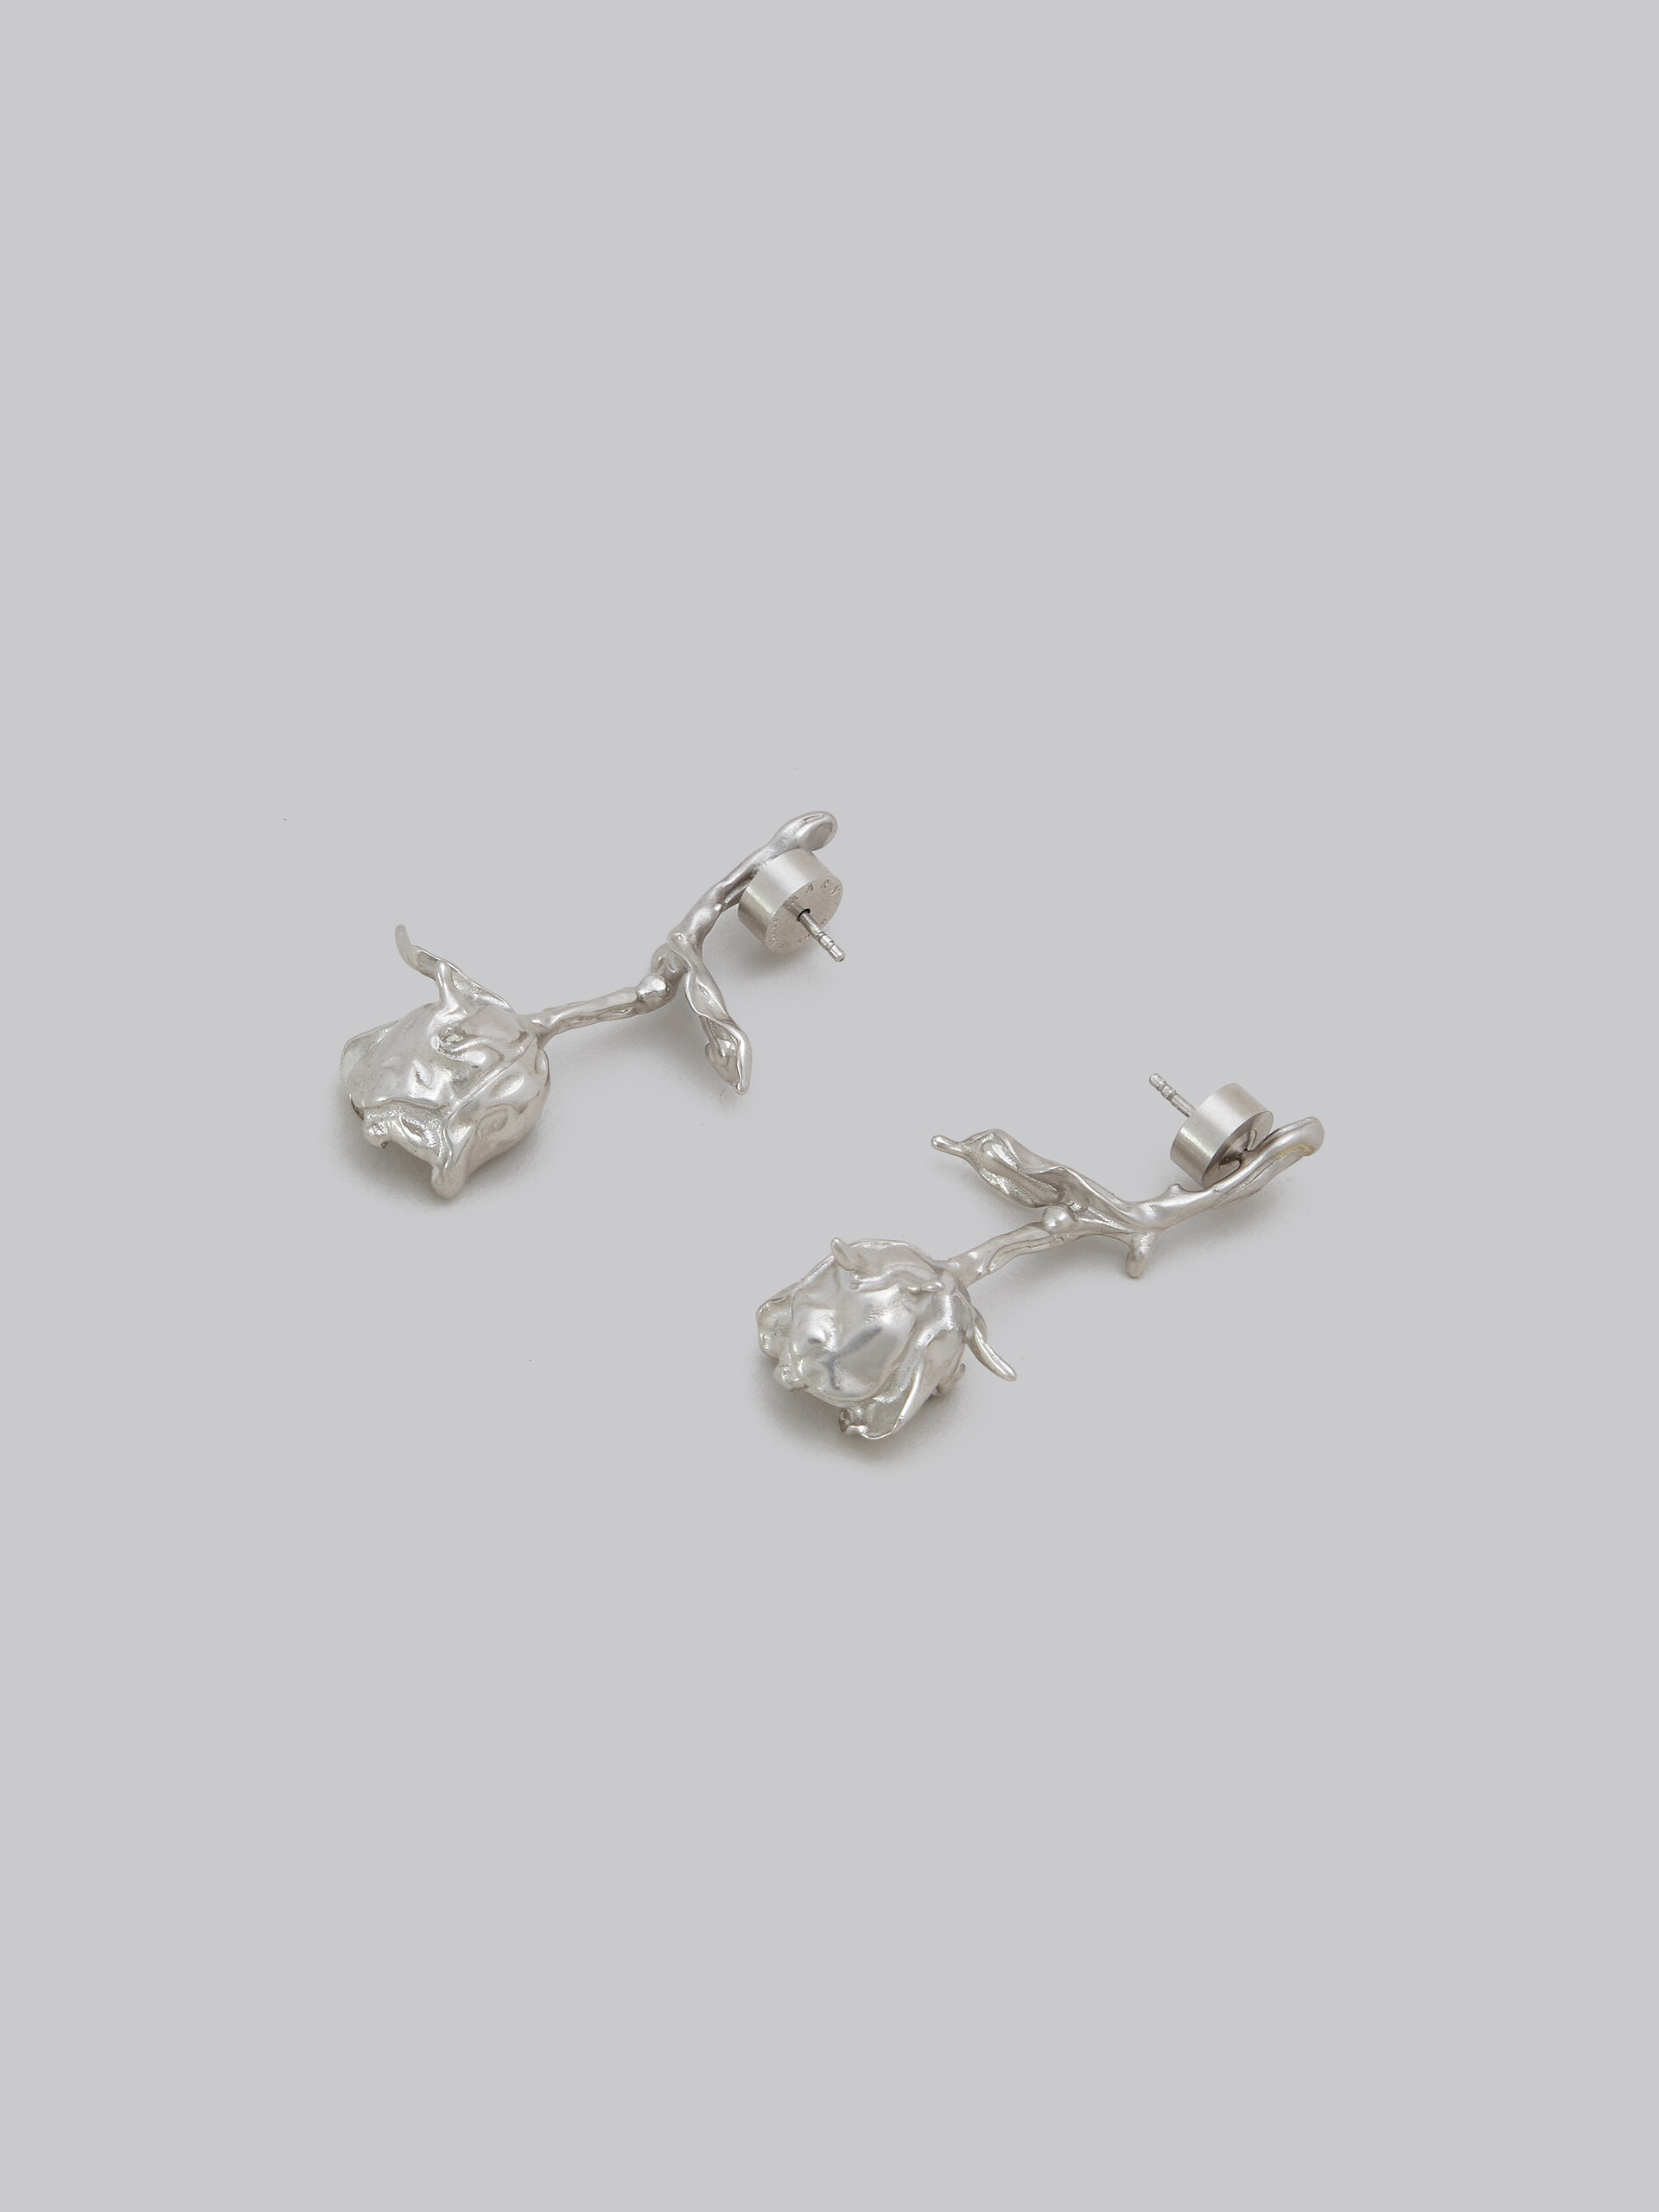 Metal rose bud earrings - Earrings - Image 4